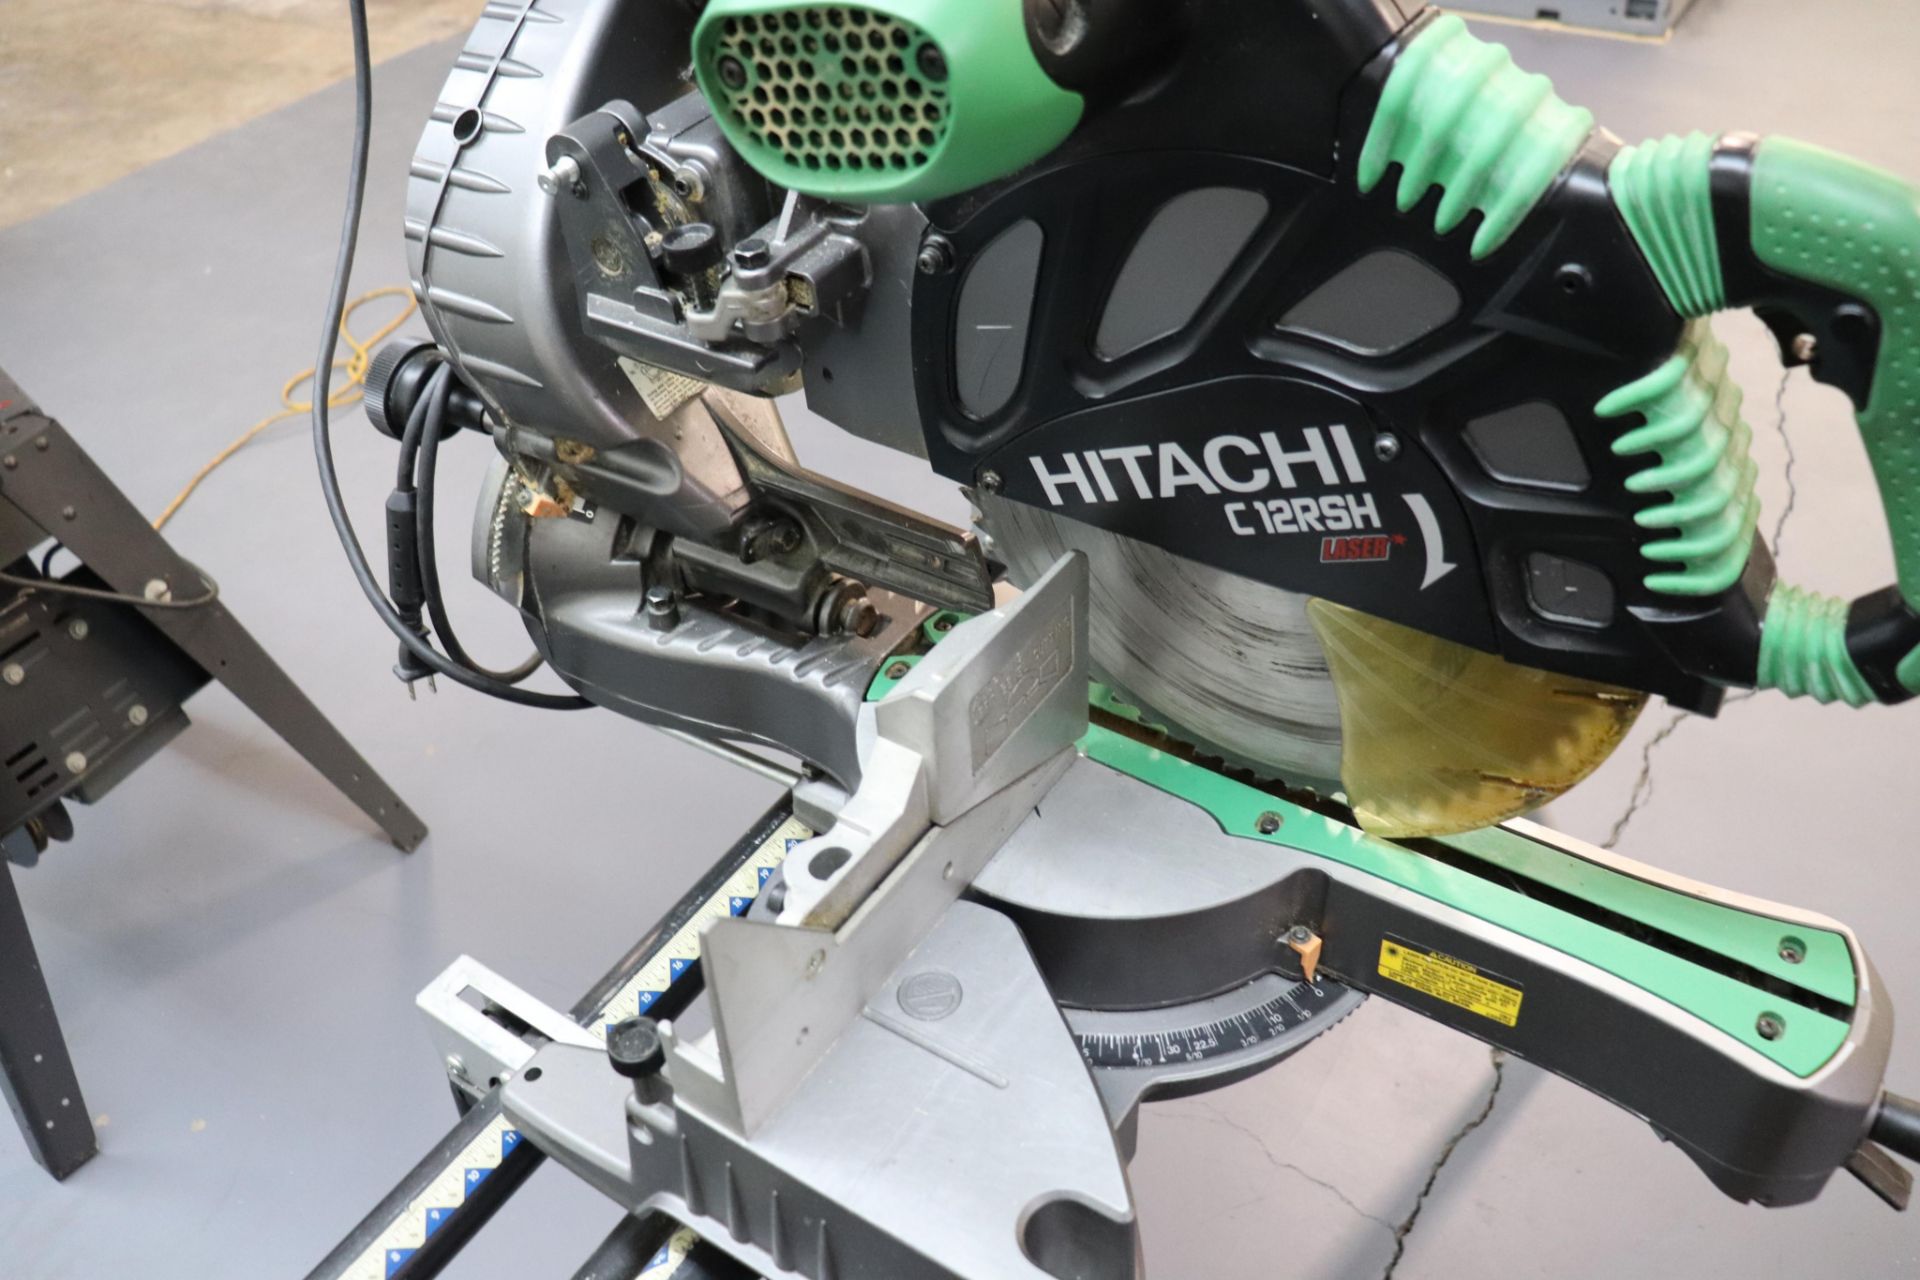 Hitachi C 12RSH 12" compound sliding miter saw - Bild 3 aus 4